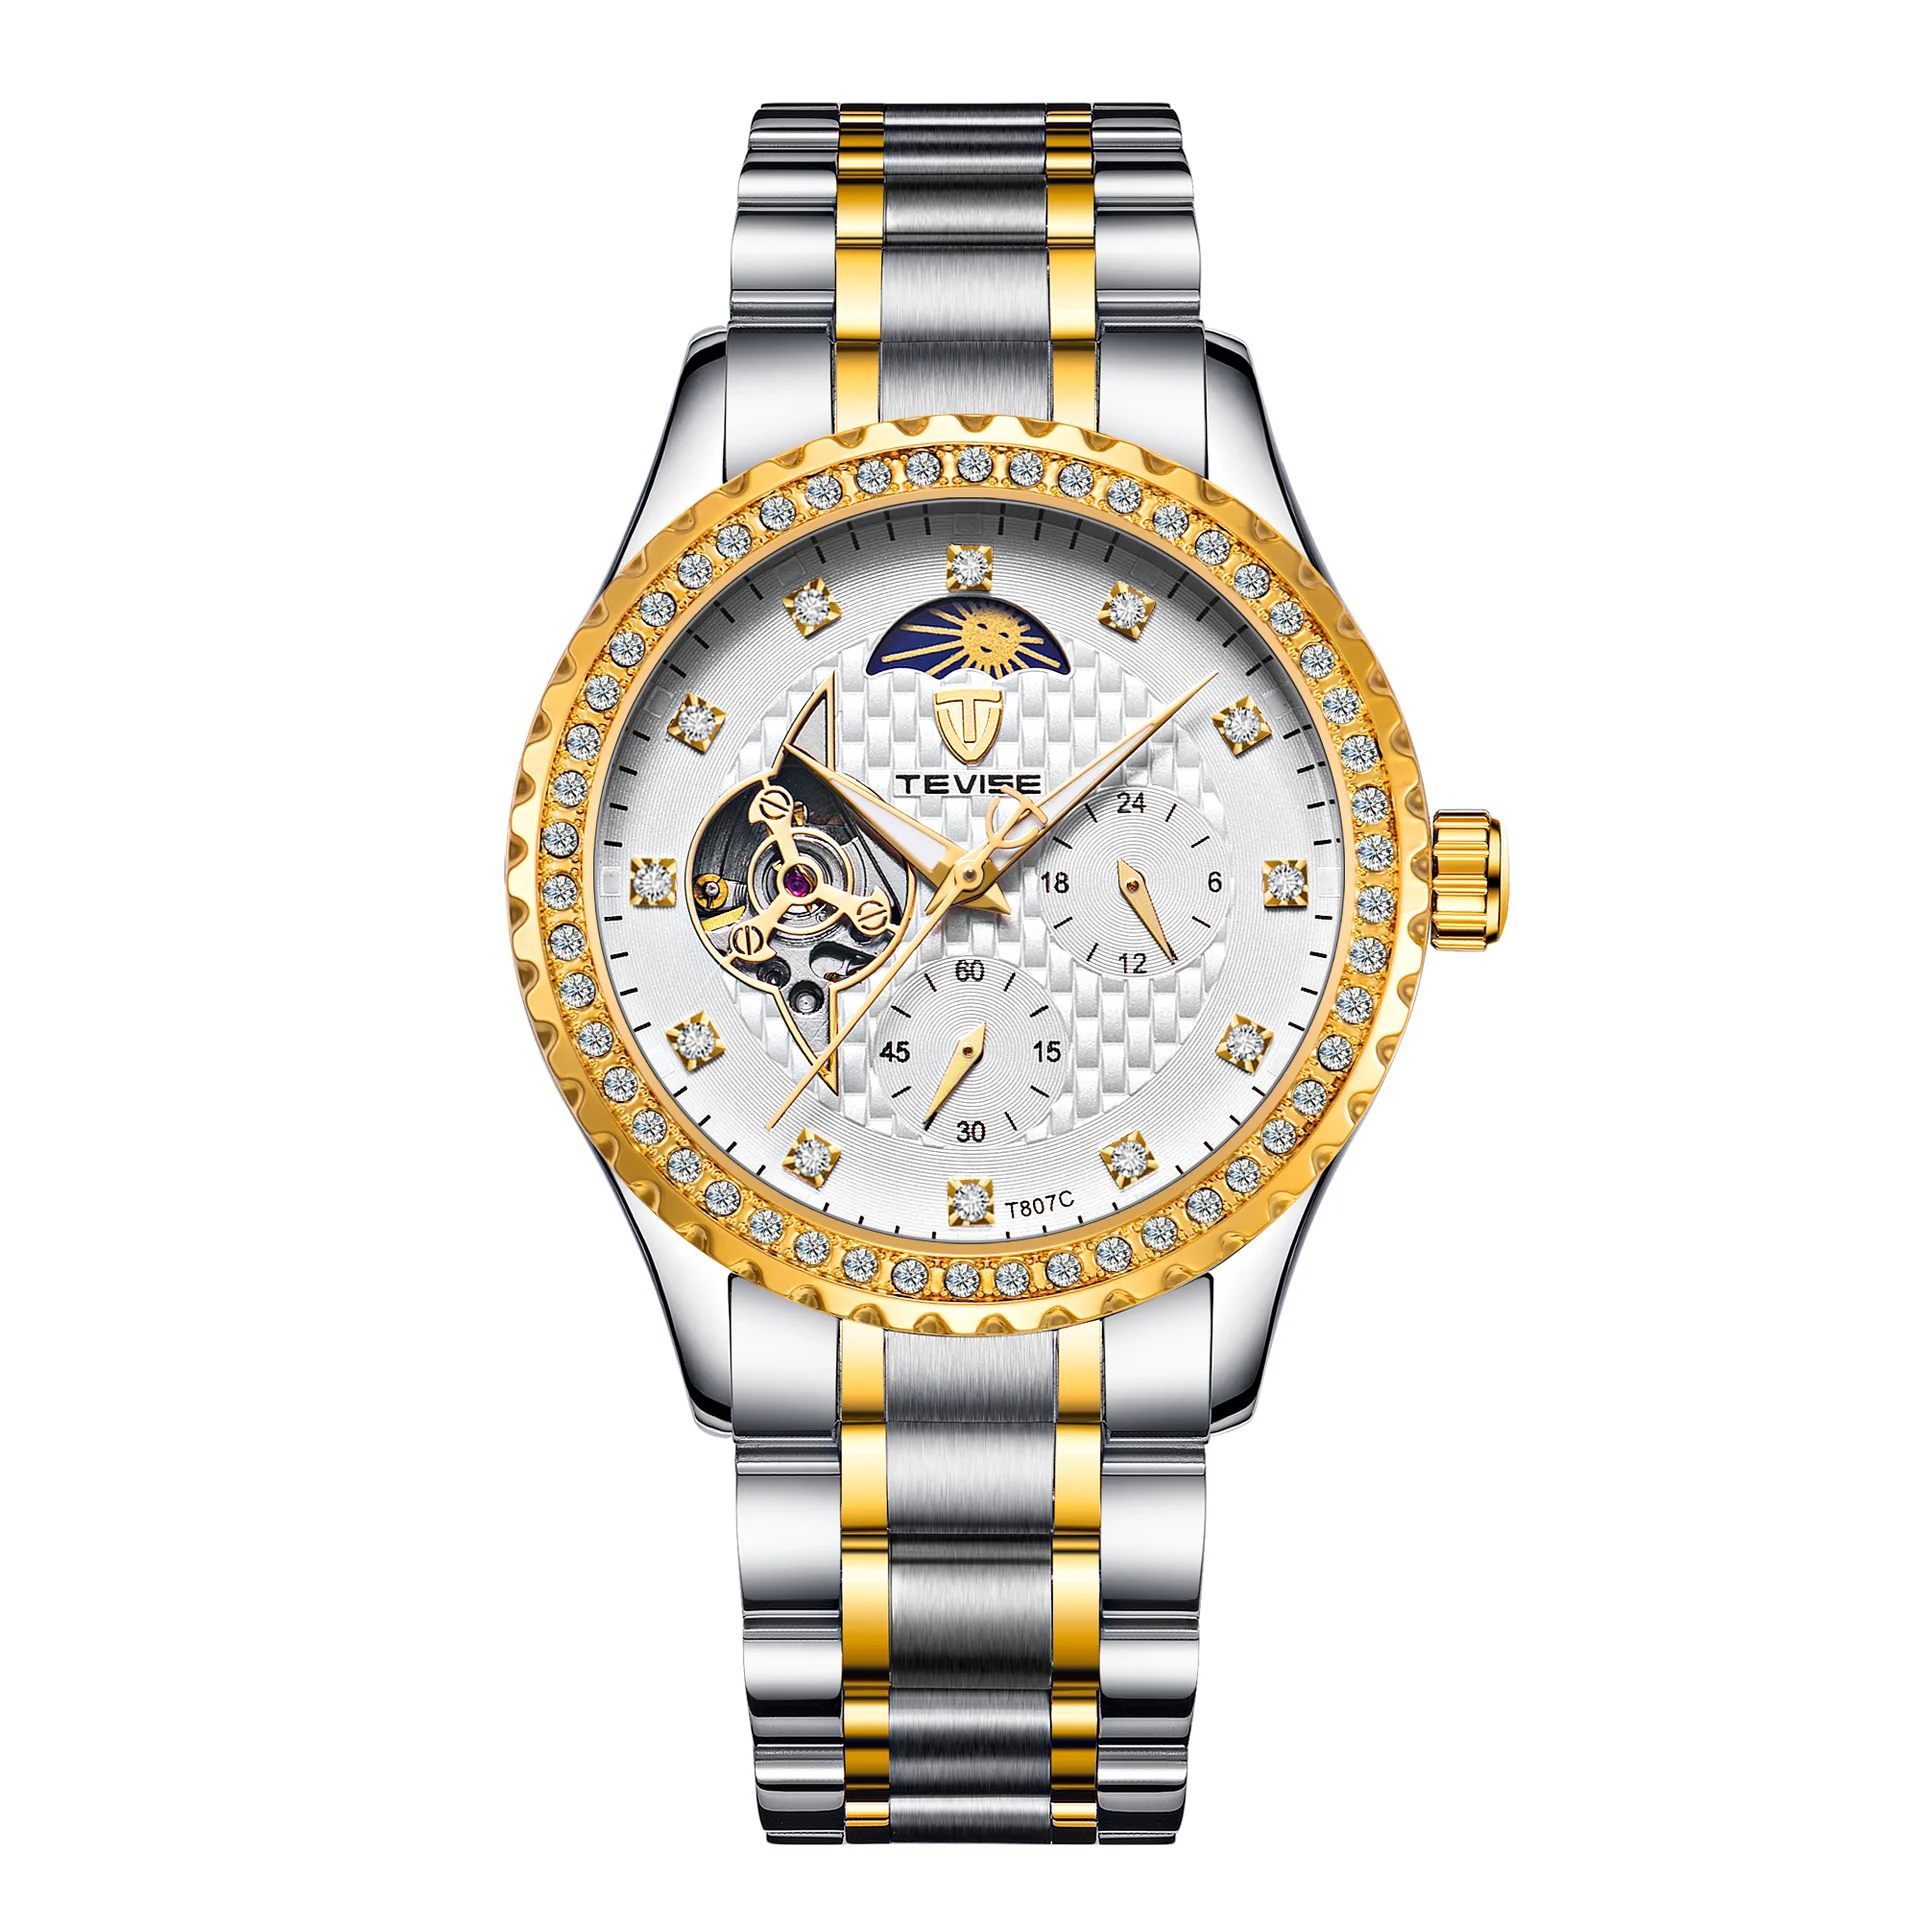 Romantic diamond watch Watch full diamond men's watch Romantic Watches for man Romantic Watches